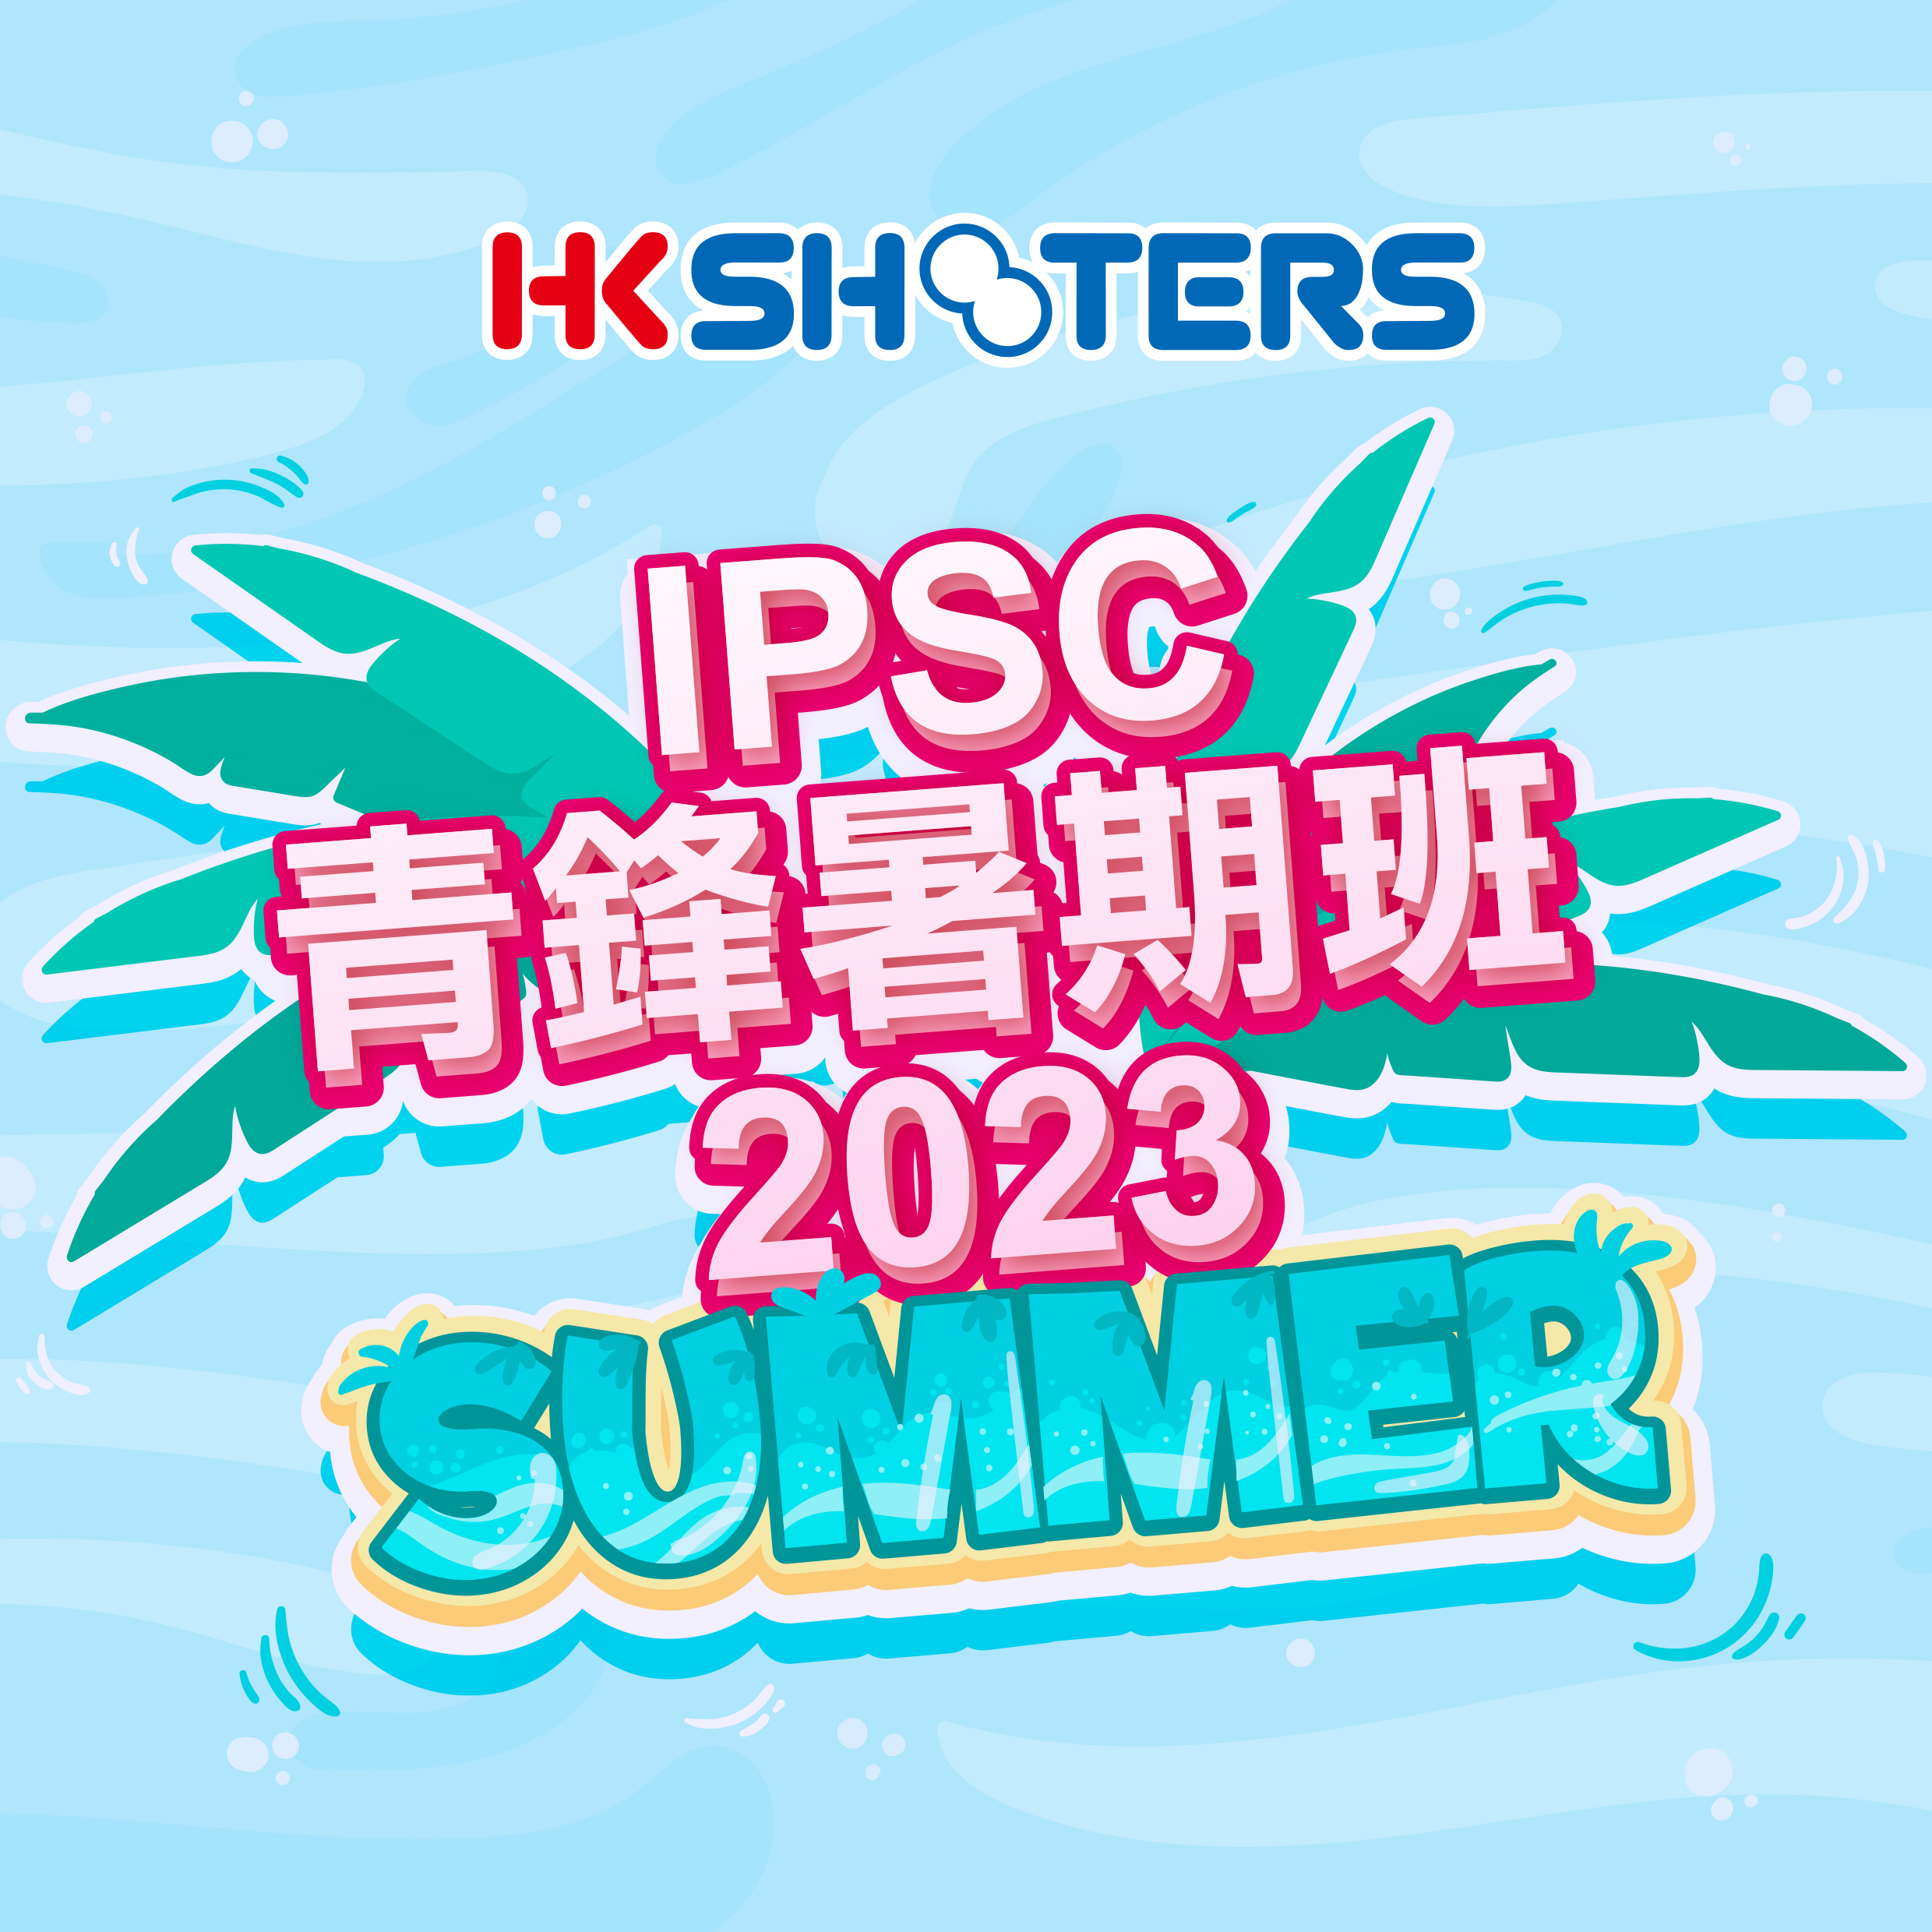 ::: 青鋒暑期IPSC課程 2023 :::